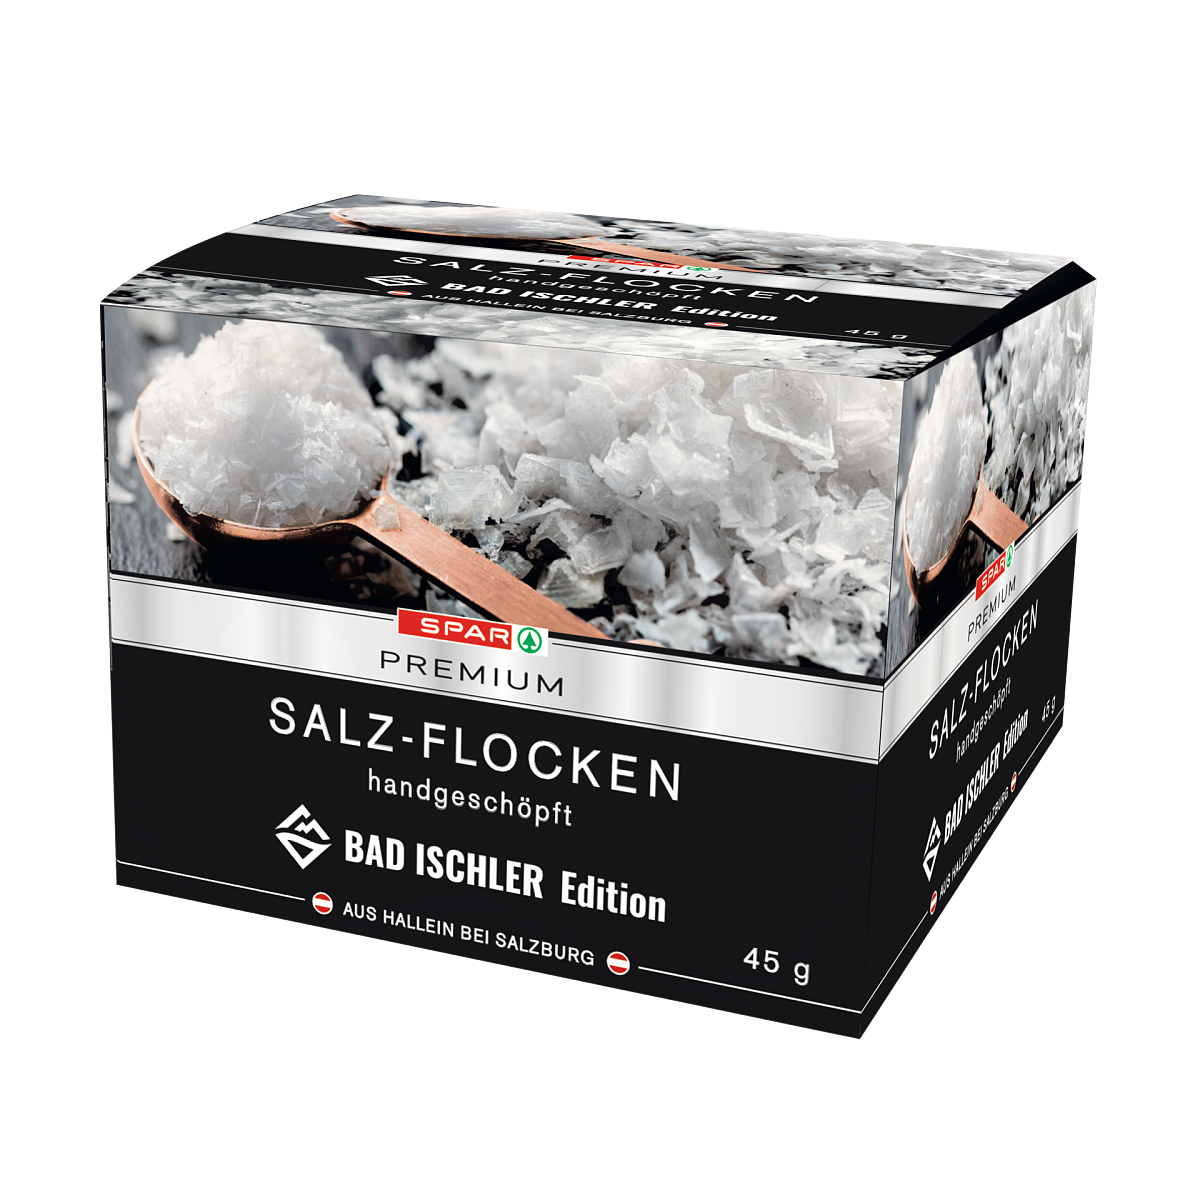 SPAR PREMIUM Salz-Flocken BAD ISCHLER Edition